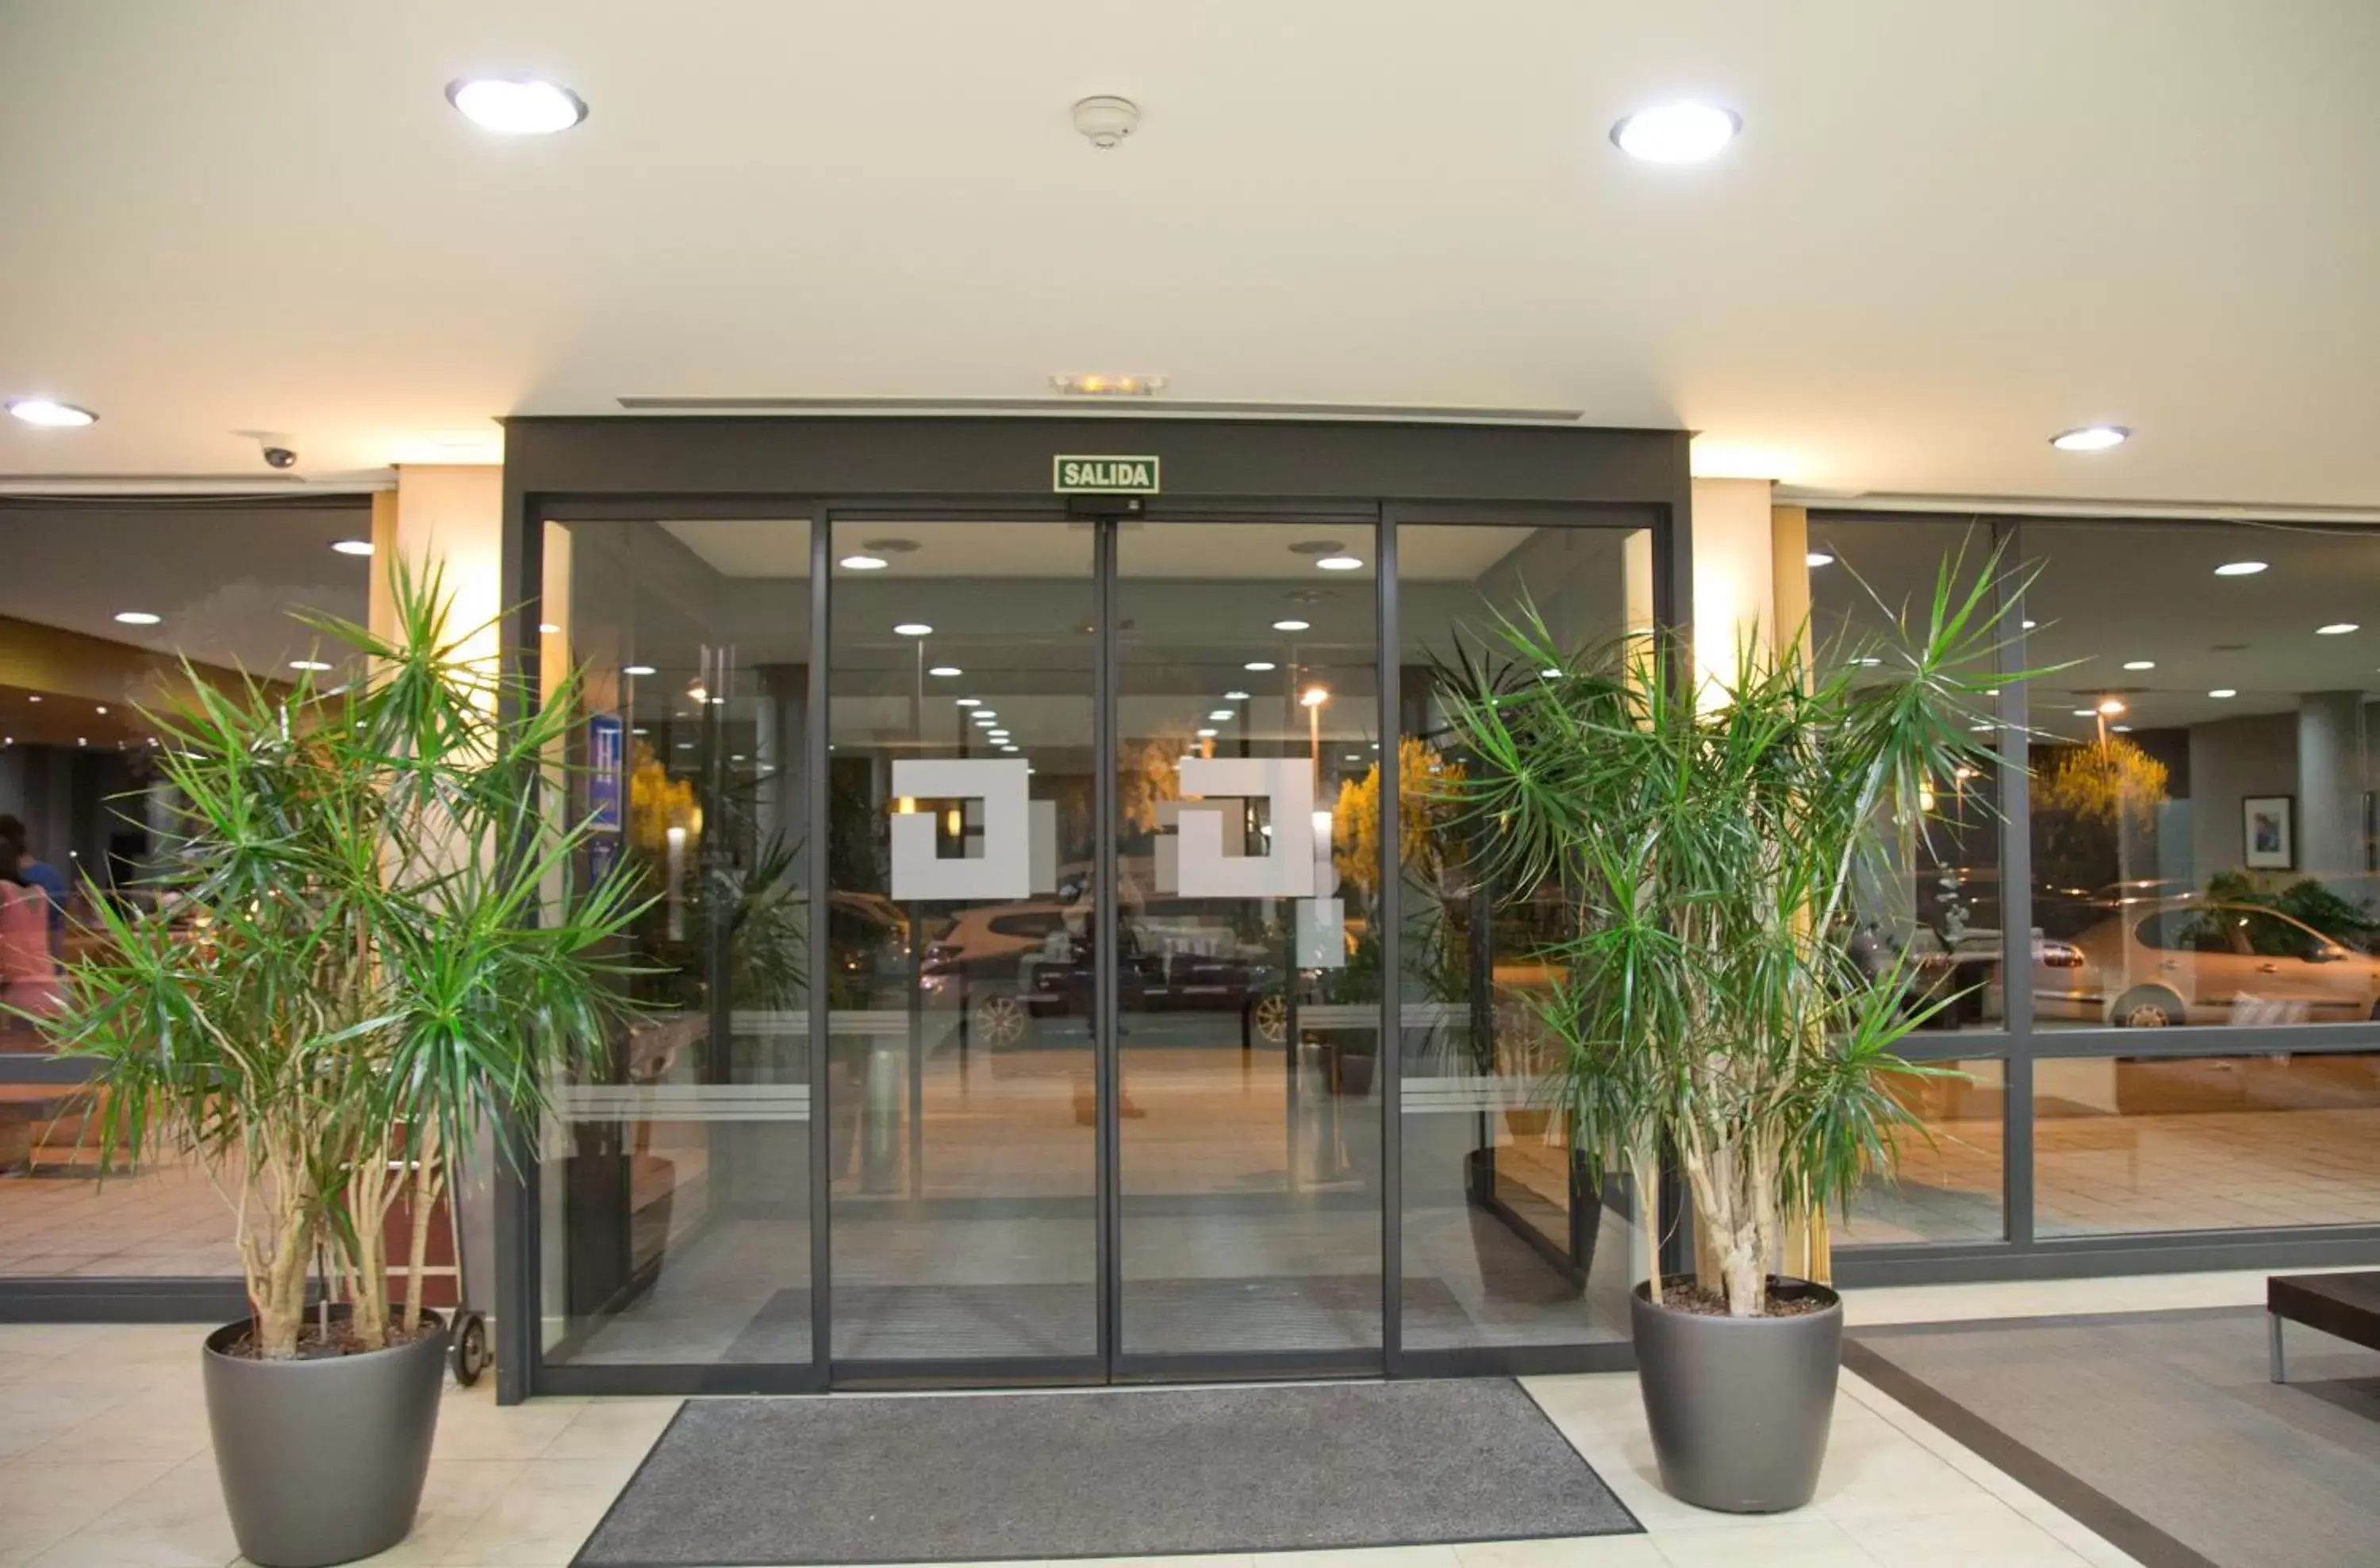 Lobby or reception in Hq La Galeria